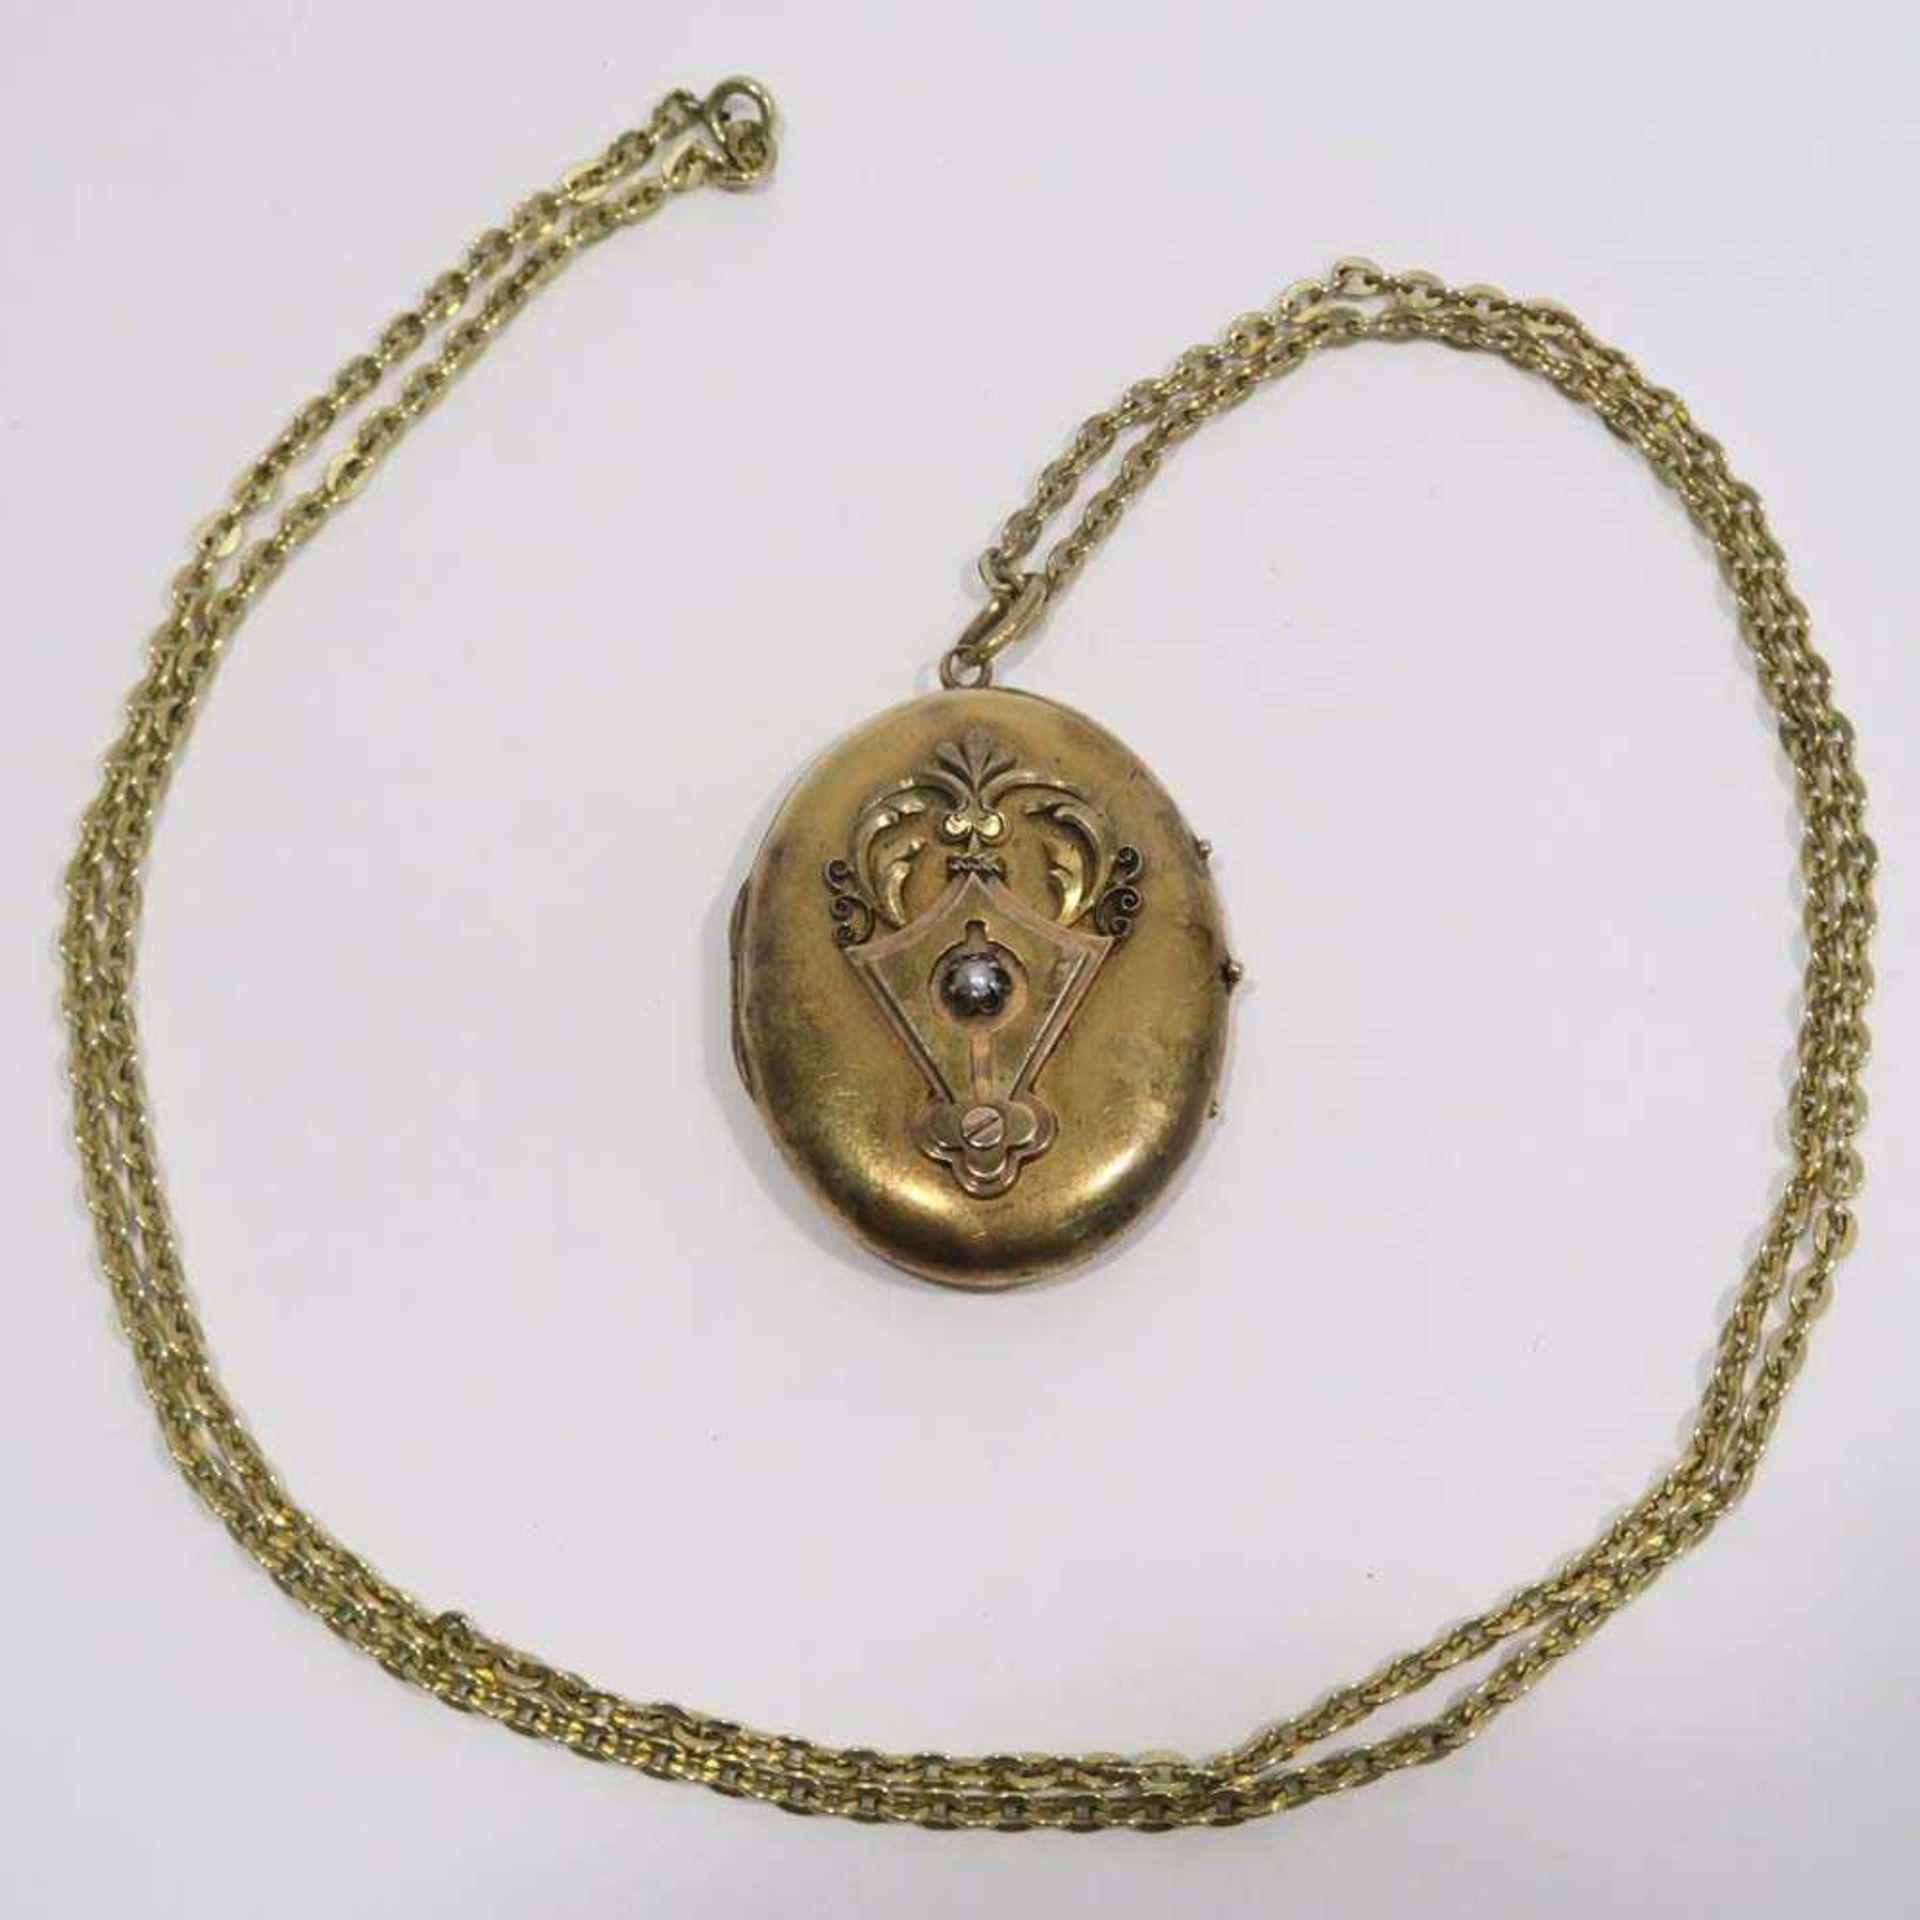 Medaillon14 K GG/RG. Ovales Medaillon zum aufklappen, frontal aufgelegter Dekor mit kleiner Perle.